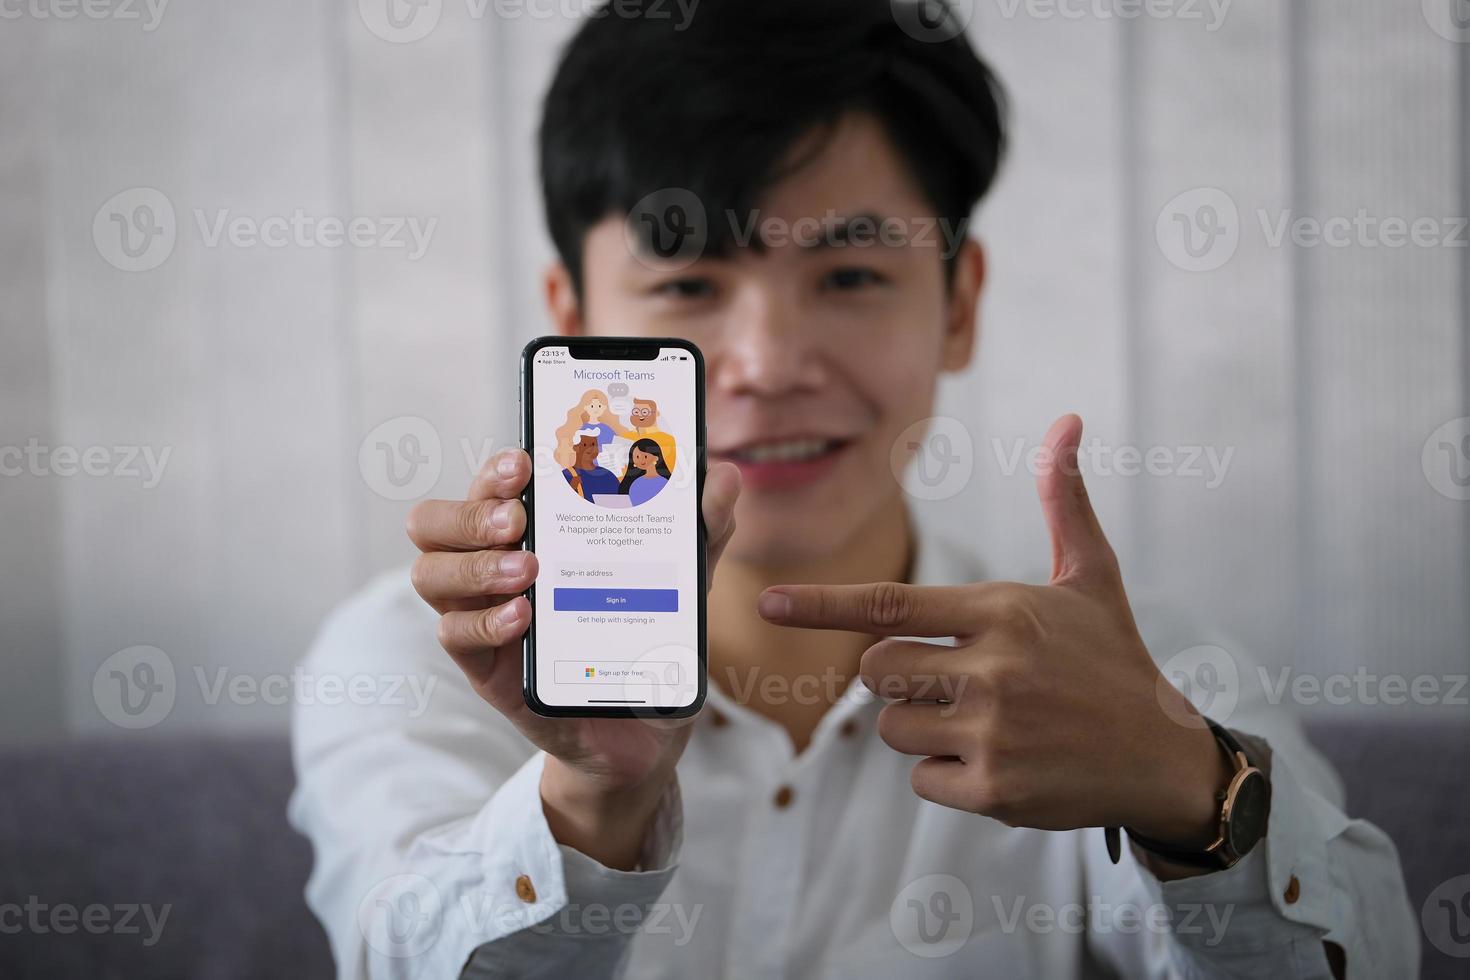 Chiang Mai, Thaïlande, 23 janvier 2021 - homme pointant vers un téléphone avec des équipes Microsoft dessus photo